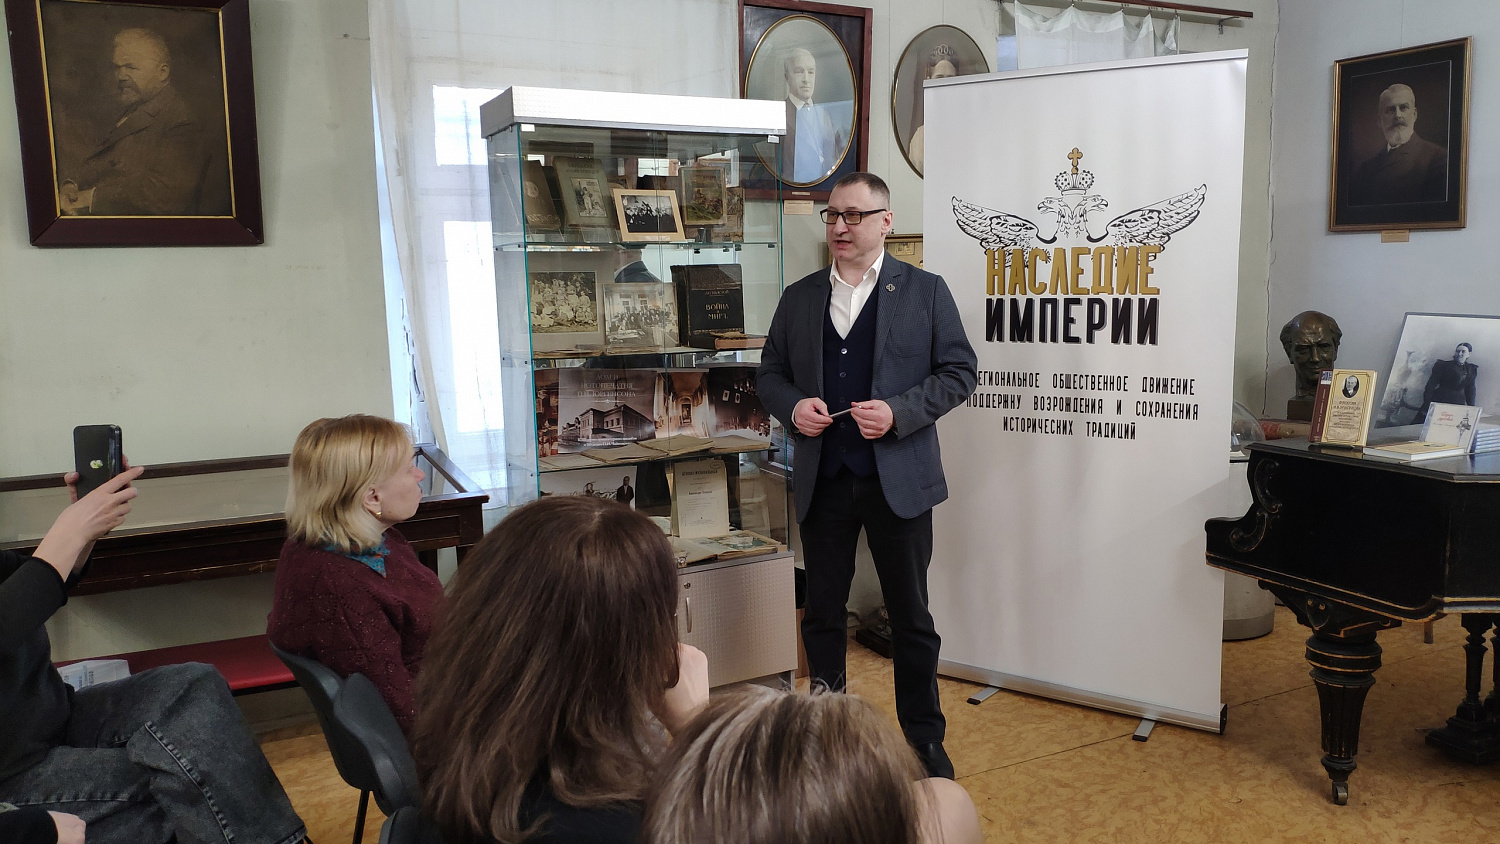 17 марта, в нашем Музее состоялся юбилейный вечер, посвященный 150-летию Николая Тимофеевича Каштанова